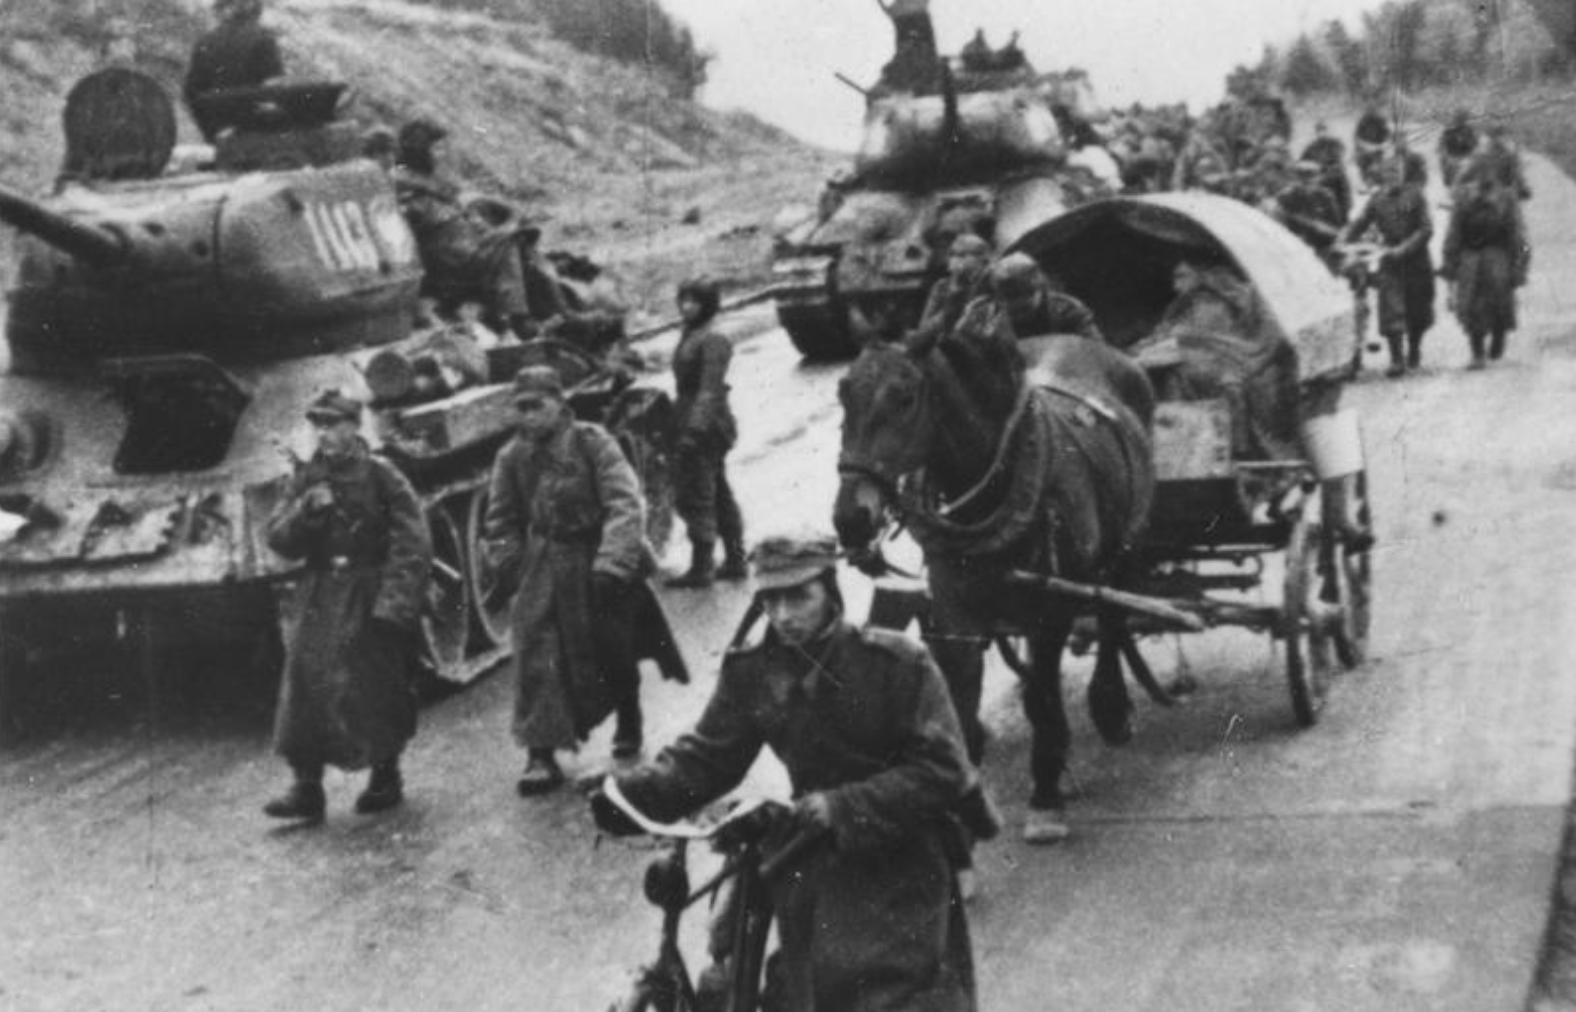 Пољска армија на путу у Берлин, 1945.

